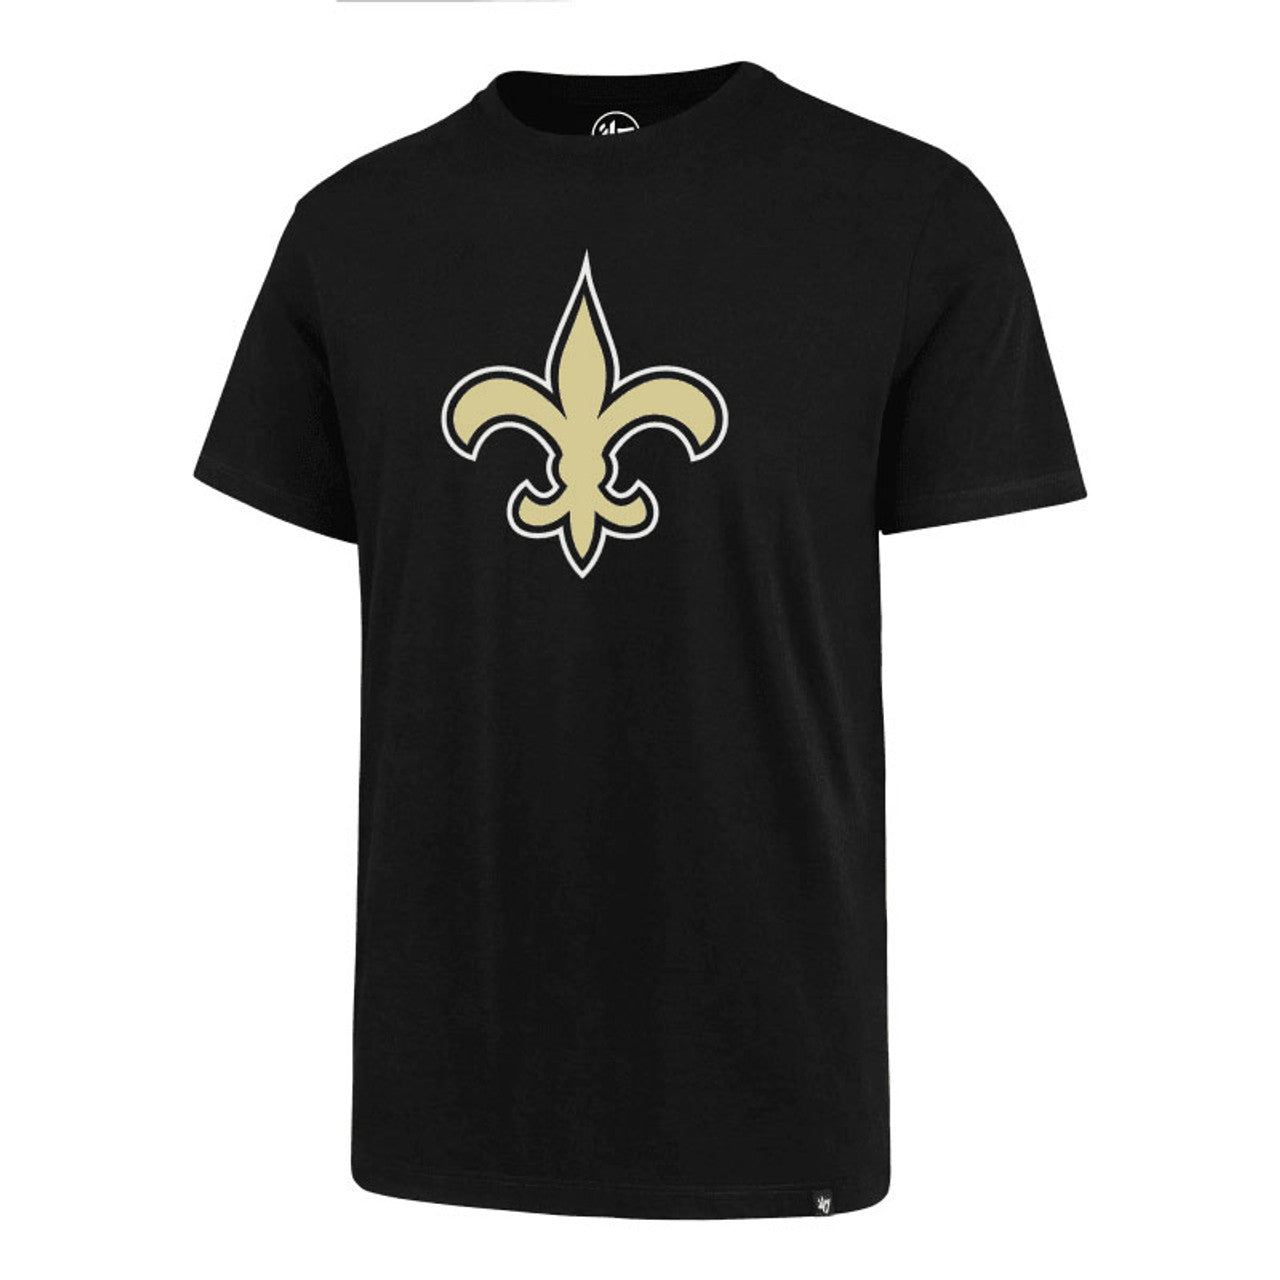 New Orleans Saints Black Imprint Super Rival T-Shirt